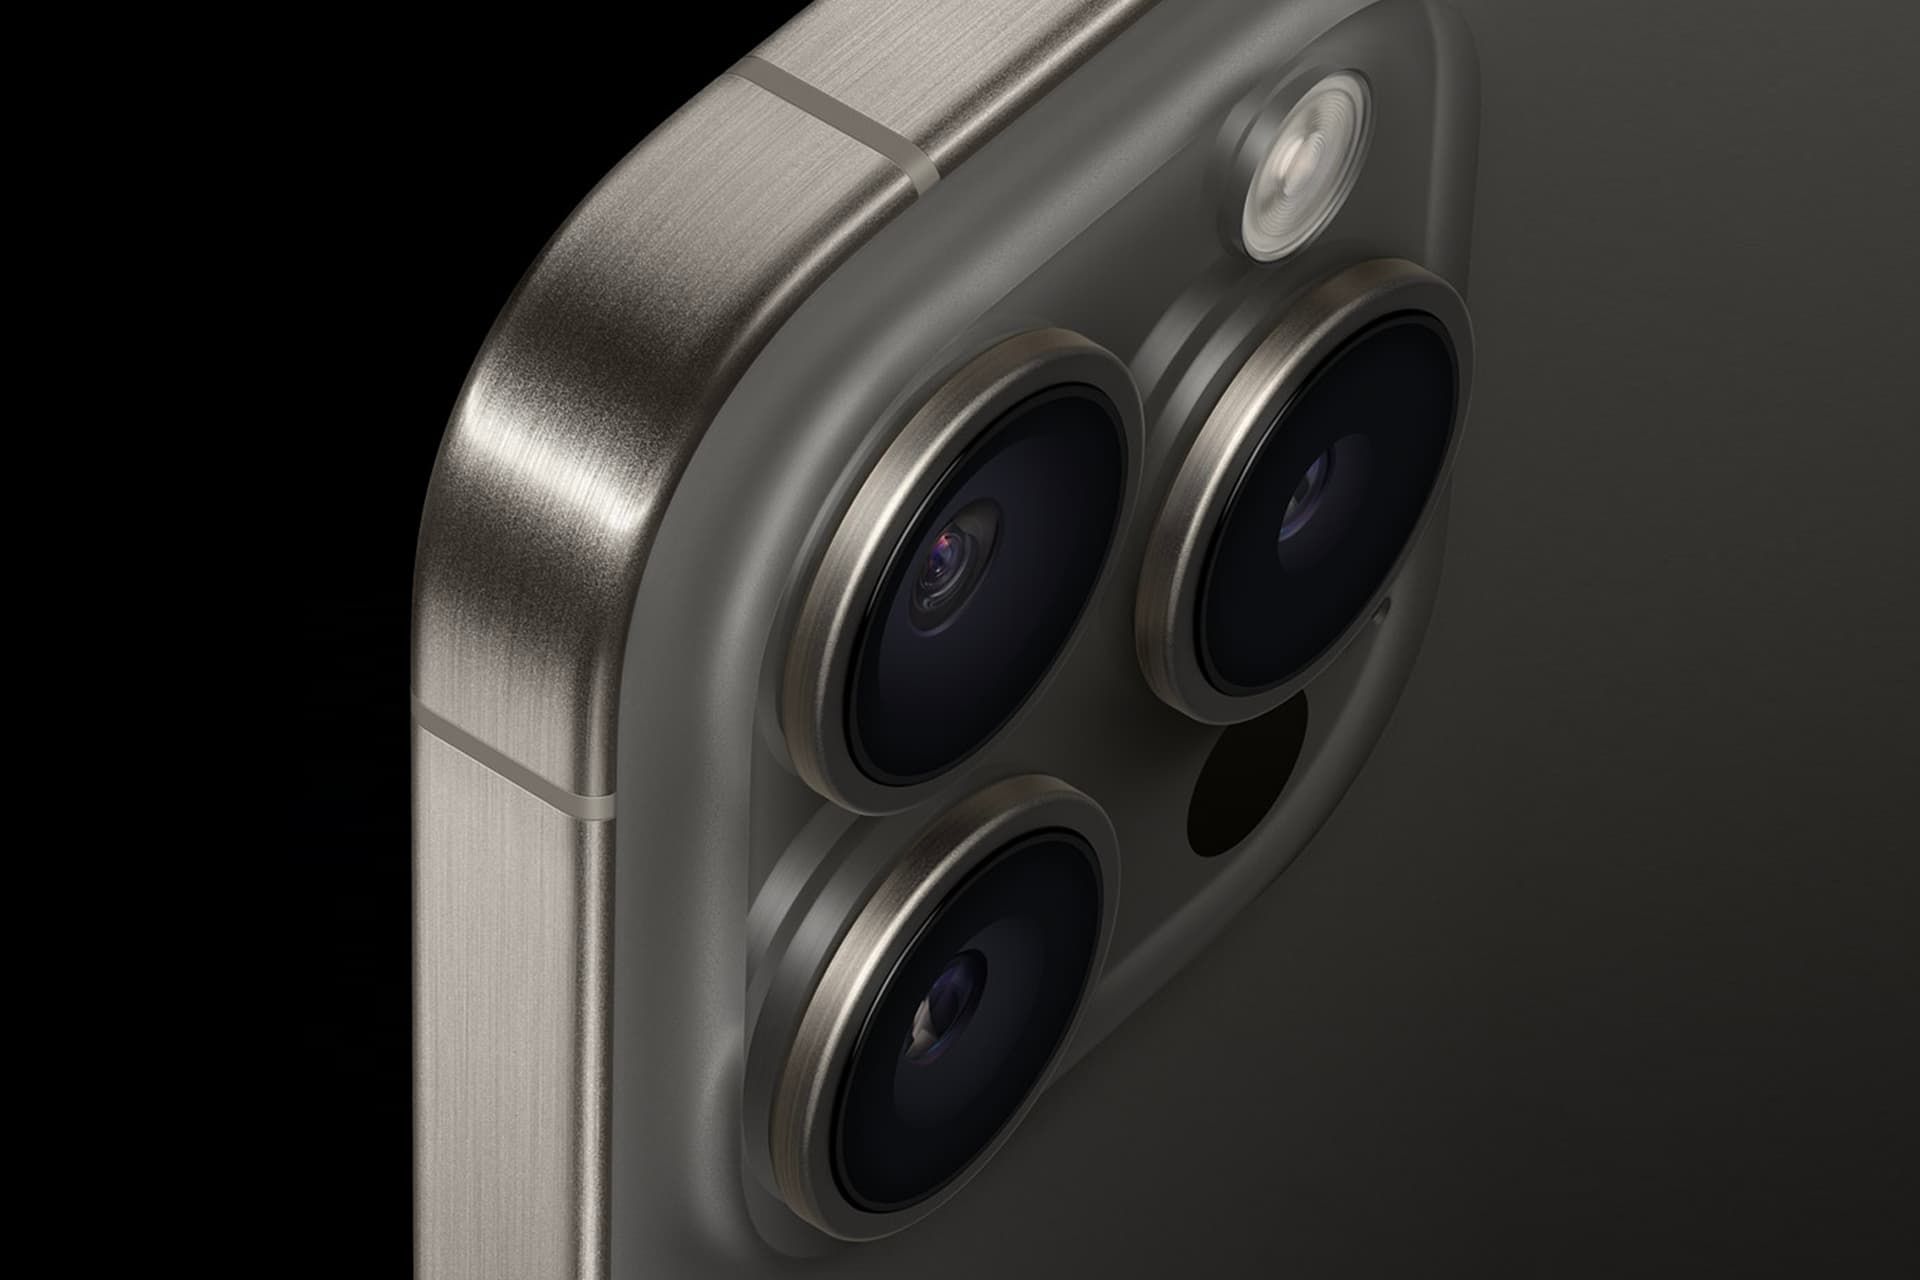 سیستم دوربین آیفون ۱۵ پرو مکس اپل / iPhone 15 Pro Max از نمای نزدیک